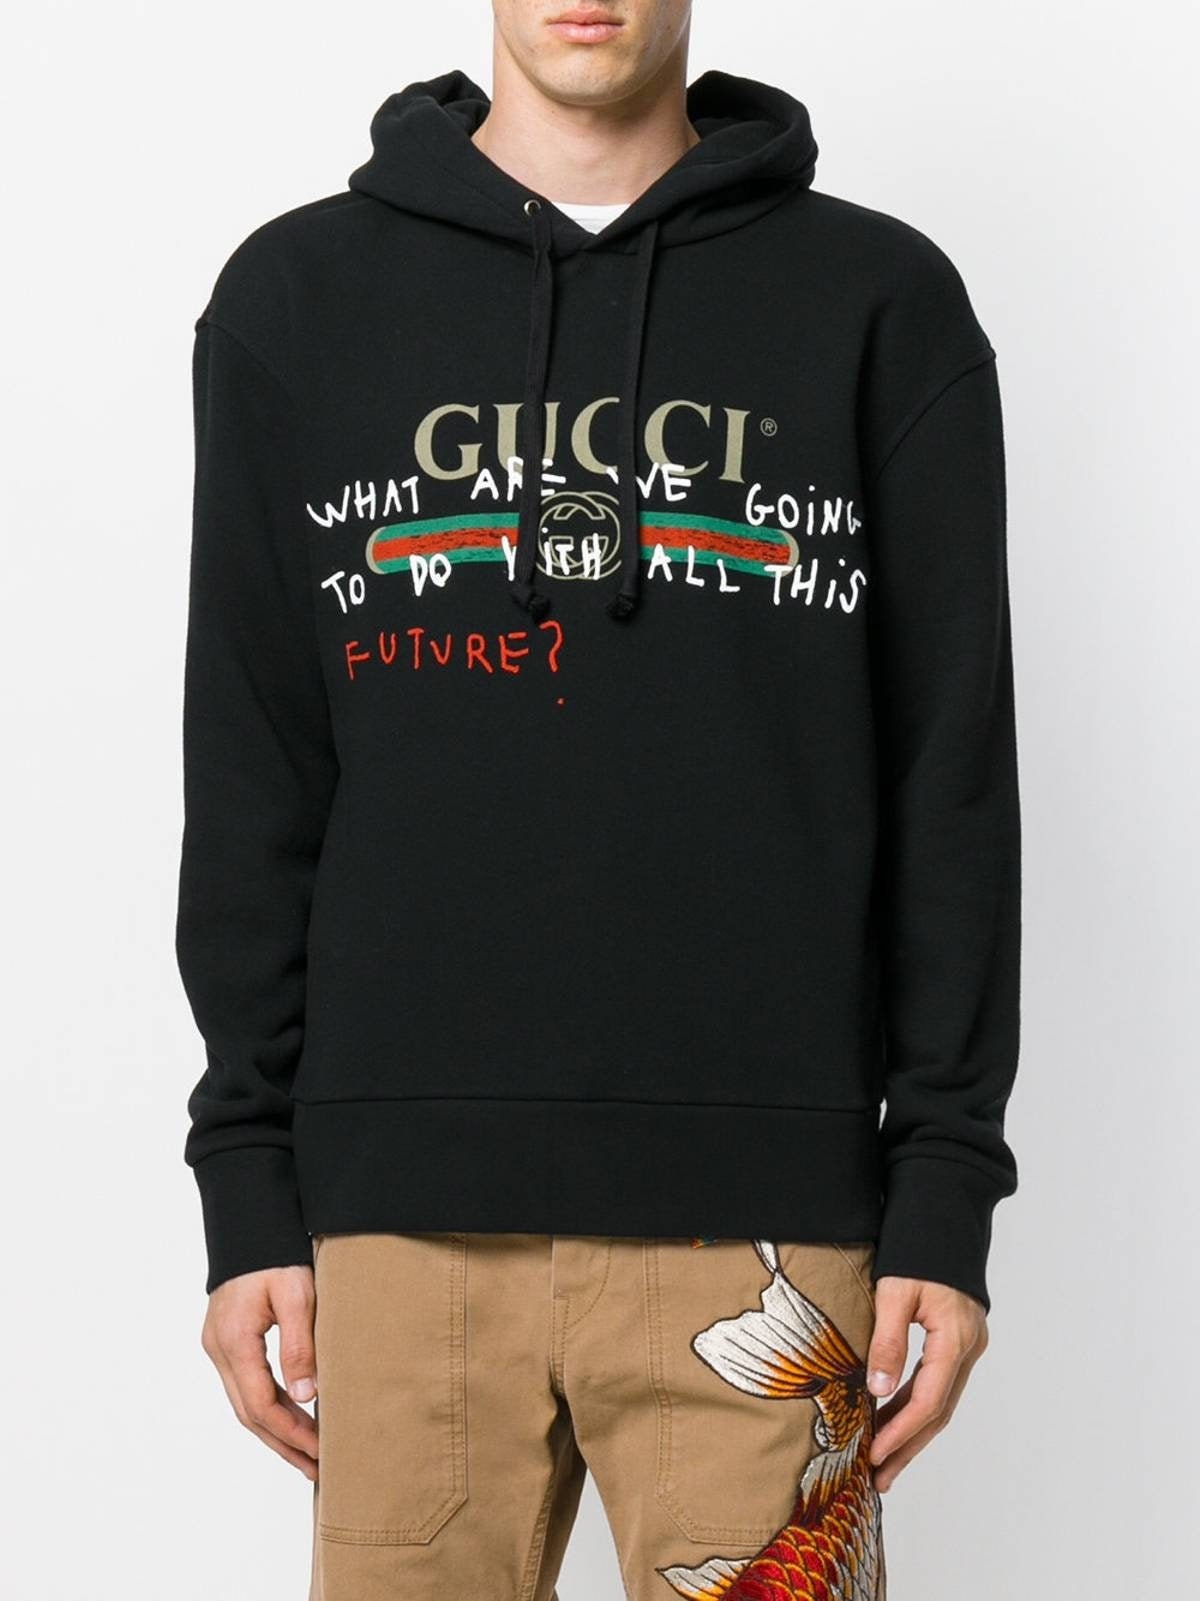 Gucci Hoodie Men's Gucci Hoodie hoodie jahseh xxx | Etsy